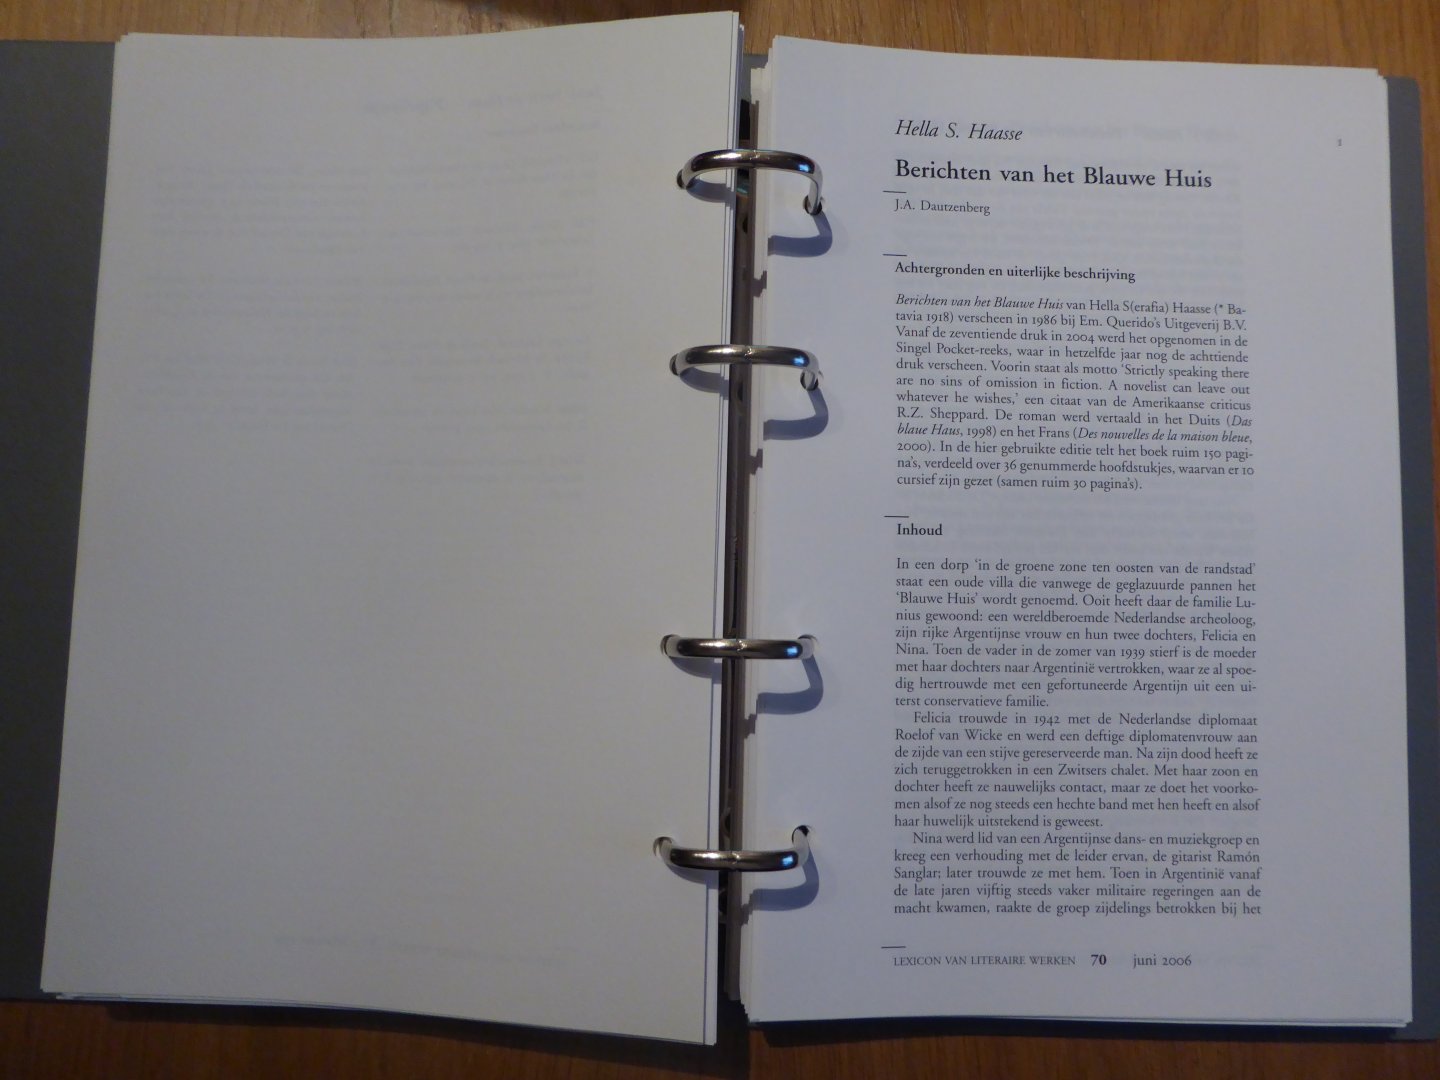 Haasse, Hella S. / Dautzenberg, J.A. - Hella S. Haasse - Berichten van het Blauwe Huis (uit: Lexicon van Literaire Werken)